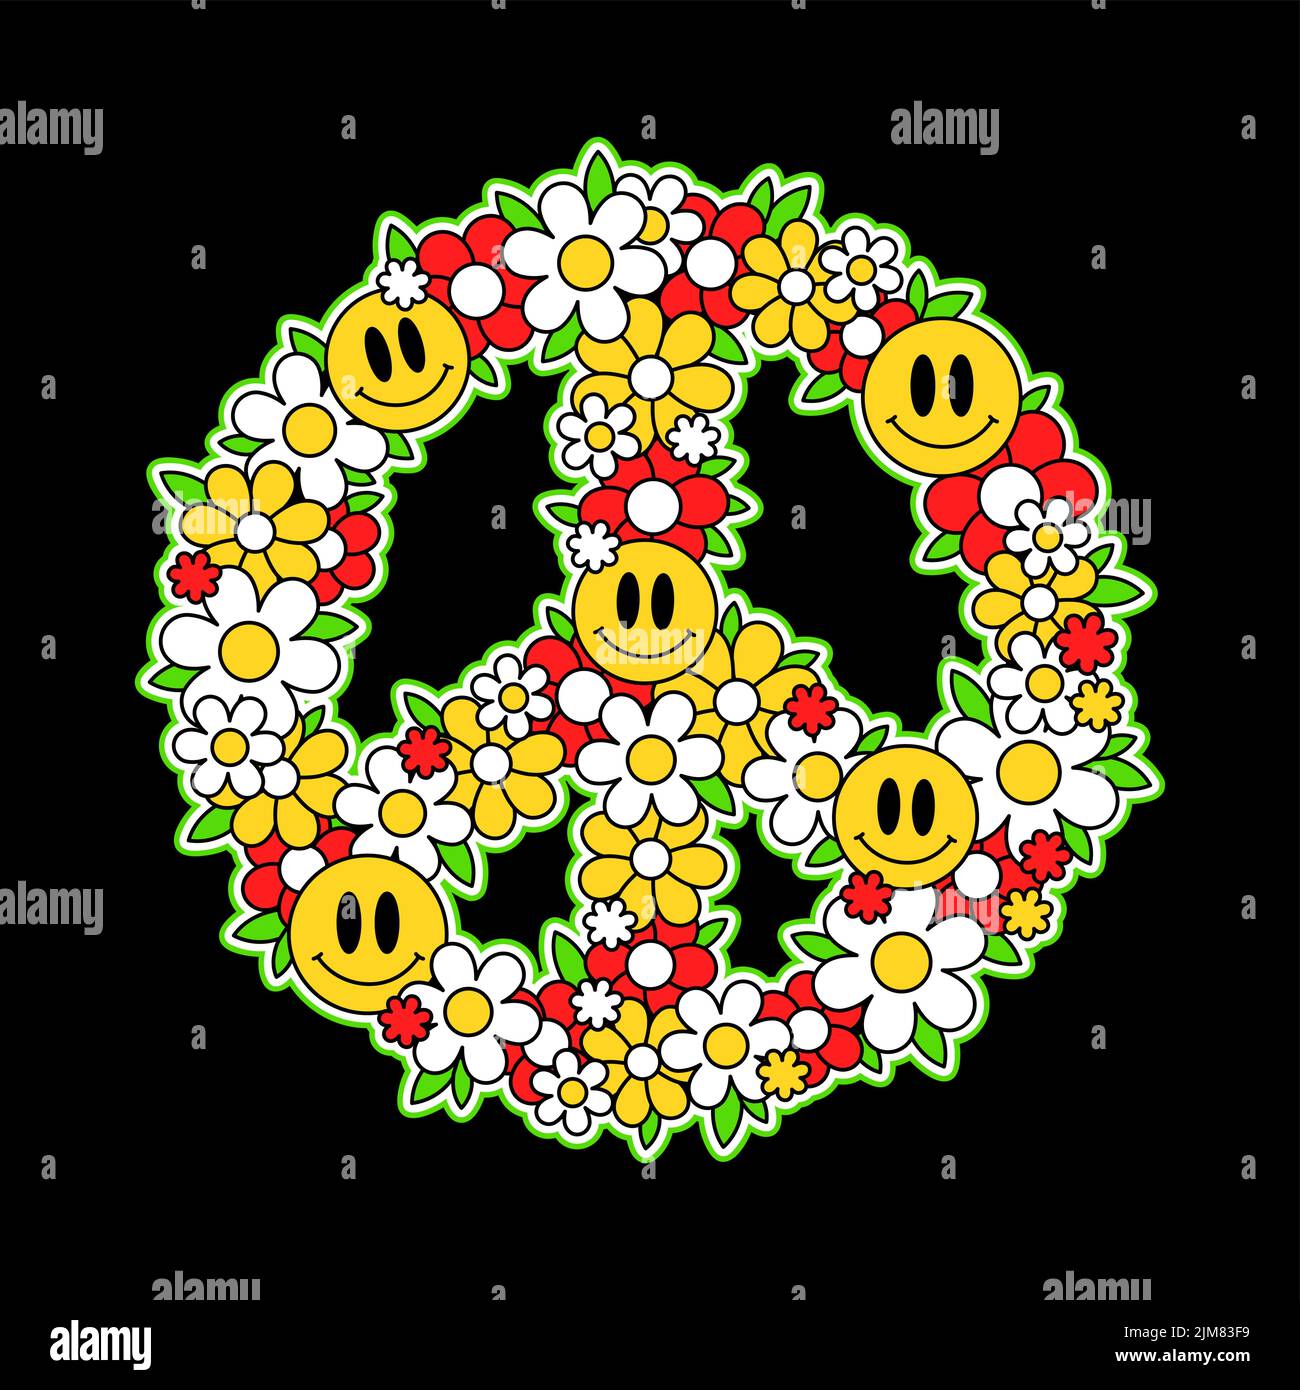 Peace-Hippie-Schild mit lächelndes Gesicht, Blumen-T-Shirt-Print-Design. Vektor Cartoon Figur Illustration. Trippig, 60s.70s, Hippie Frieden, psychedelischer Druck für T-Shirt, Poster, Aufkleber, Logo-Konzept Stock Vektor